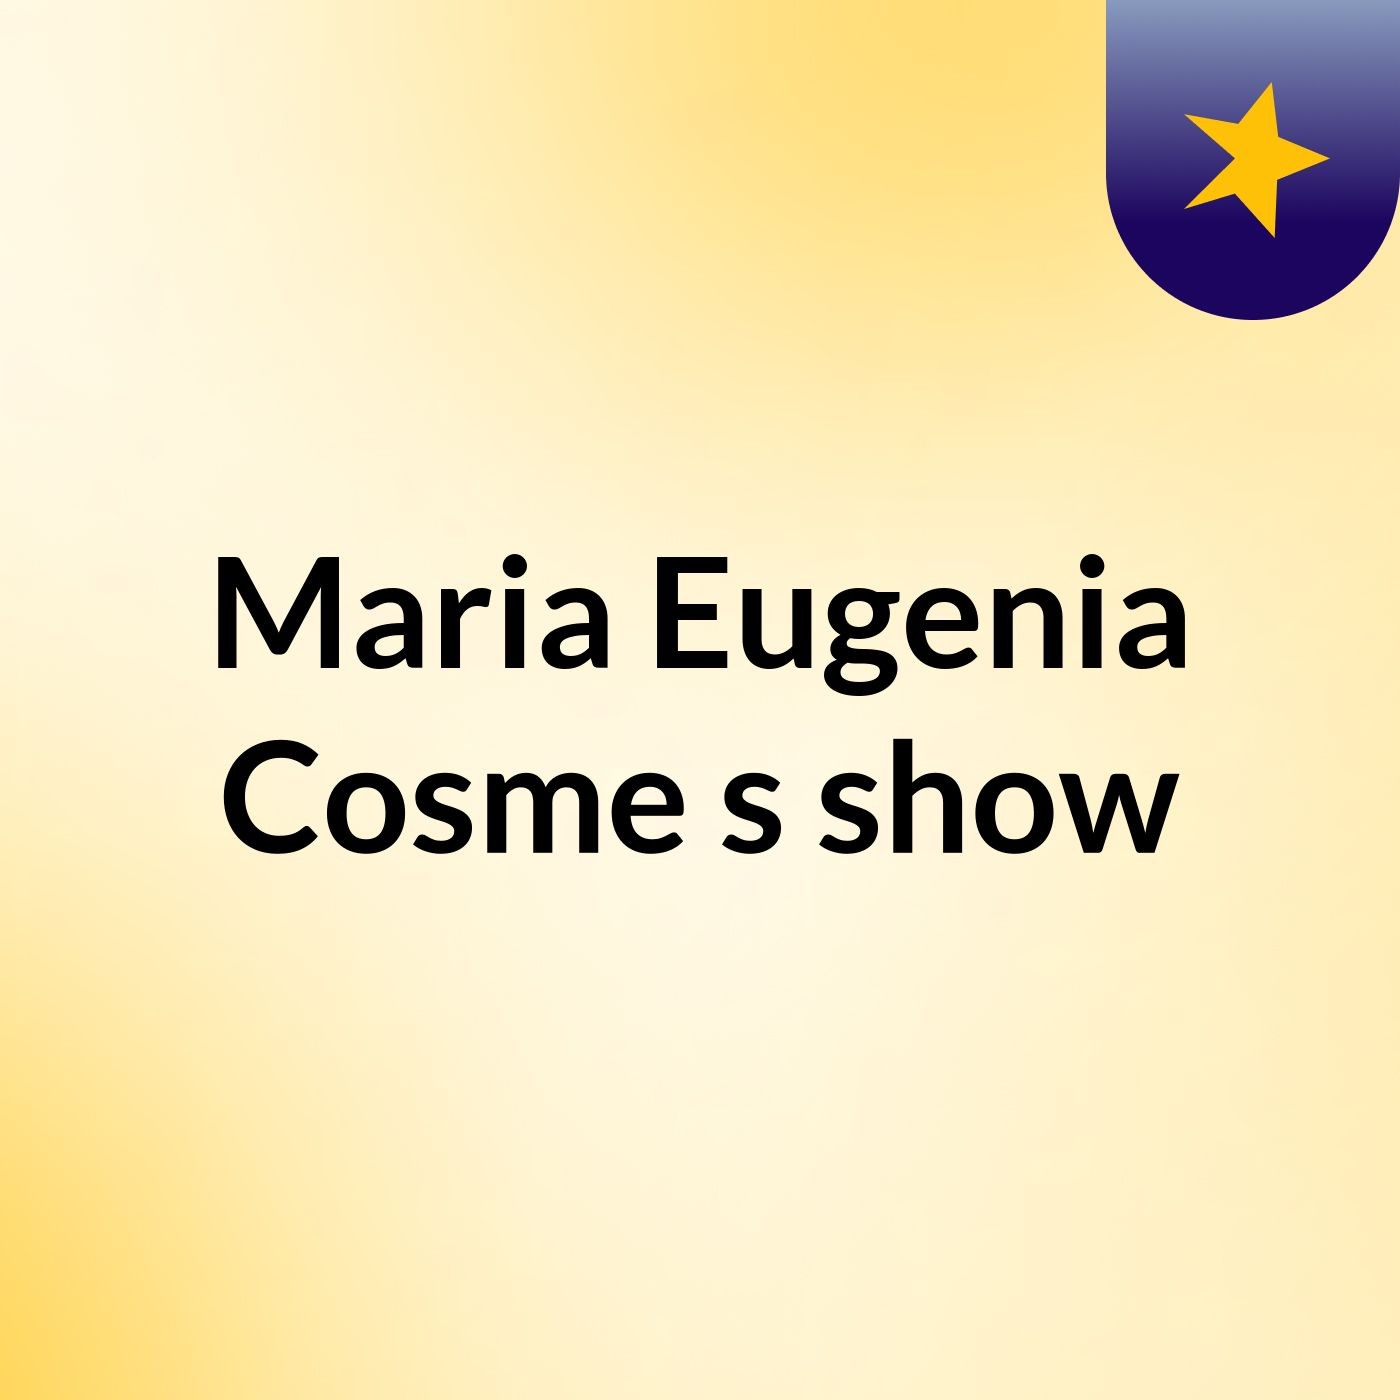 Maria Eugenia Cosme's show